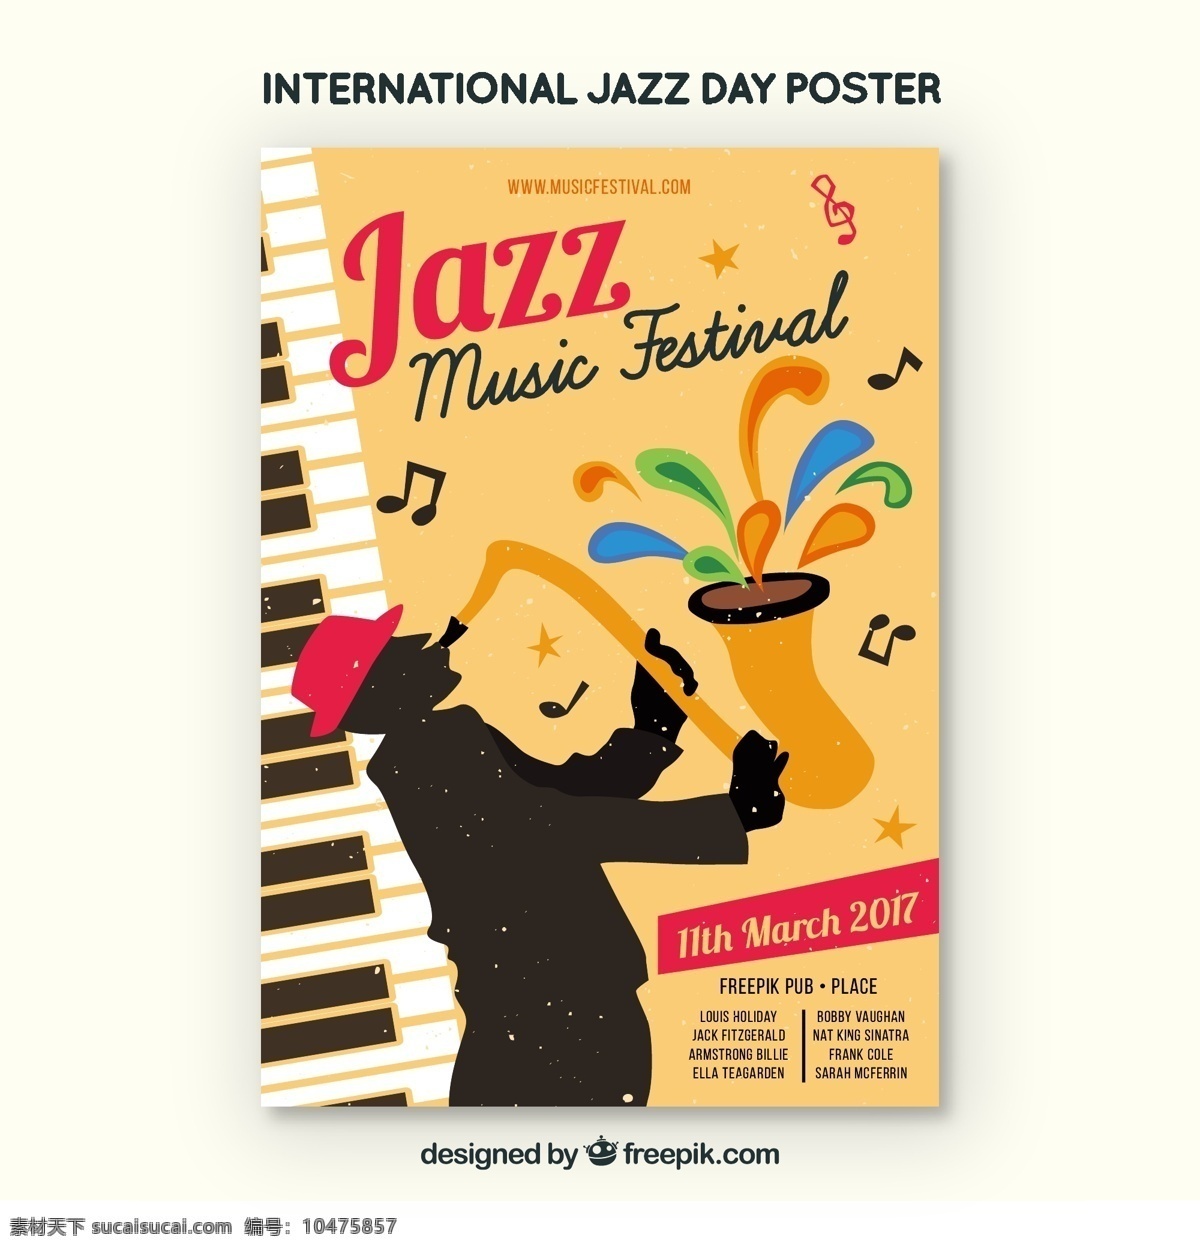 爵士 音乐节 小册子 传单 音乐 模板 小册子模板 庆典 活动 节日 传单模板 声音 音乐会 文化 爵士乐 乐器 国际 白天 萨克斯管